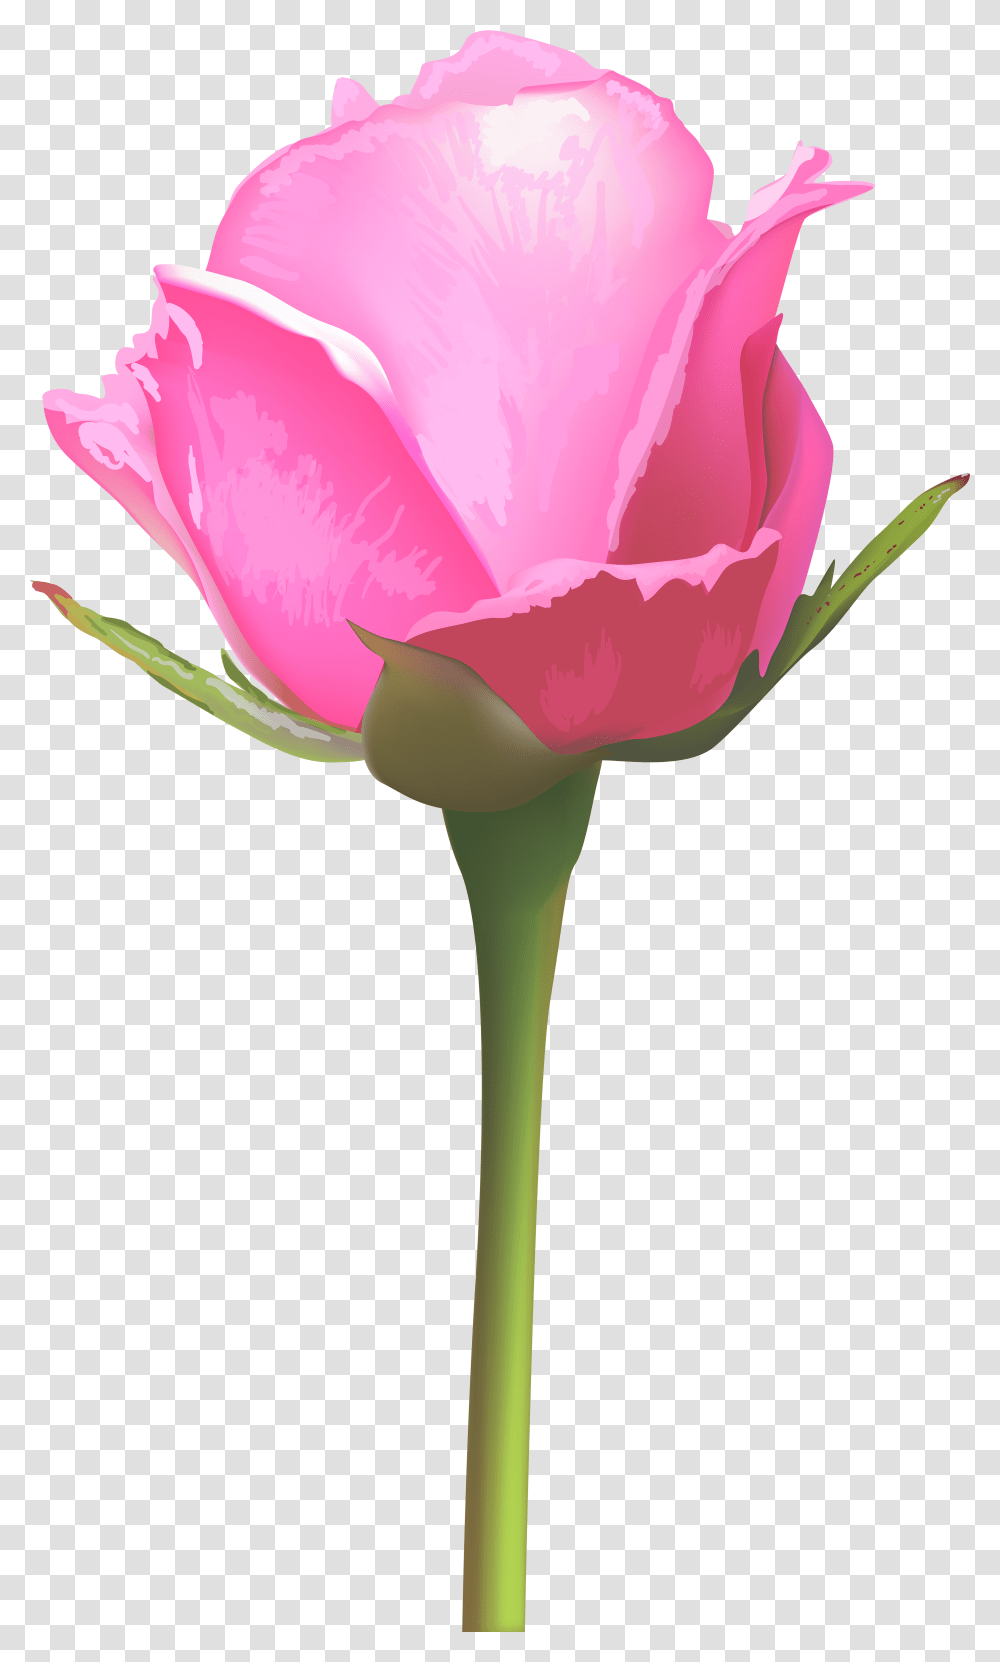 Single Pink Rose Flower Clipart Single Pink Rose Flower, Plant Transparent Png